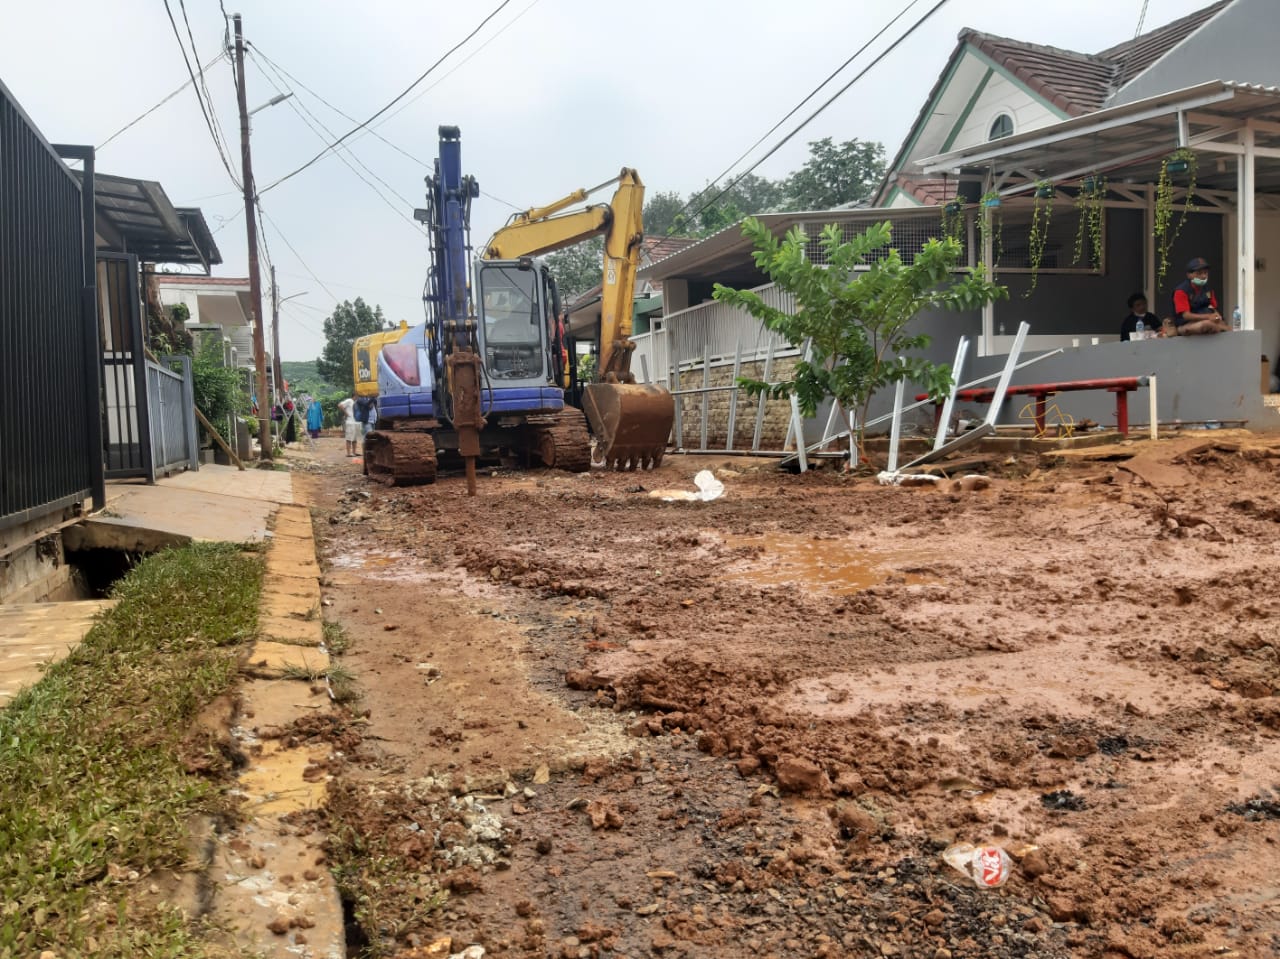 	Banjir yang merendam sebagian rumah warga di Perumahan Nerada Estate, Cipayung, Ciputat, Kota Tangerang Selatan, saat di benahi dengan kedaraan berat jenis Excavator, Senin, 14 Juni 2021.